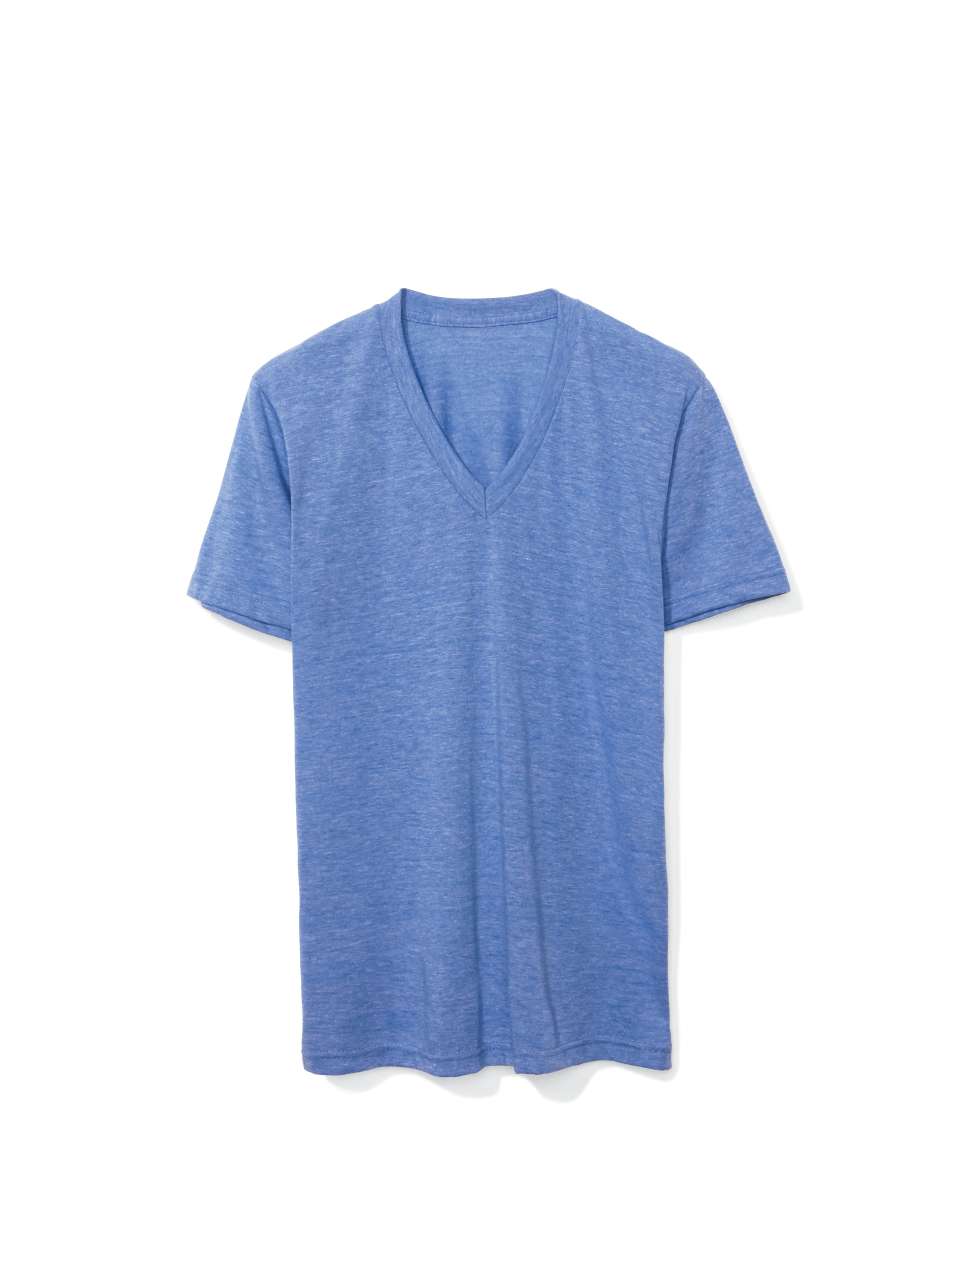 American Apparel Unisex T-Shirt V-Neck Shirt V-Ausschnitt Kurzarm